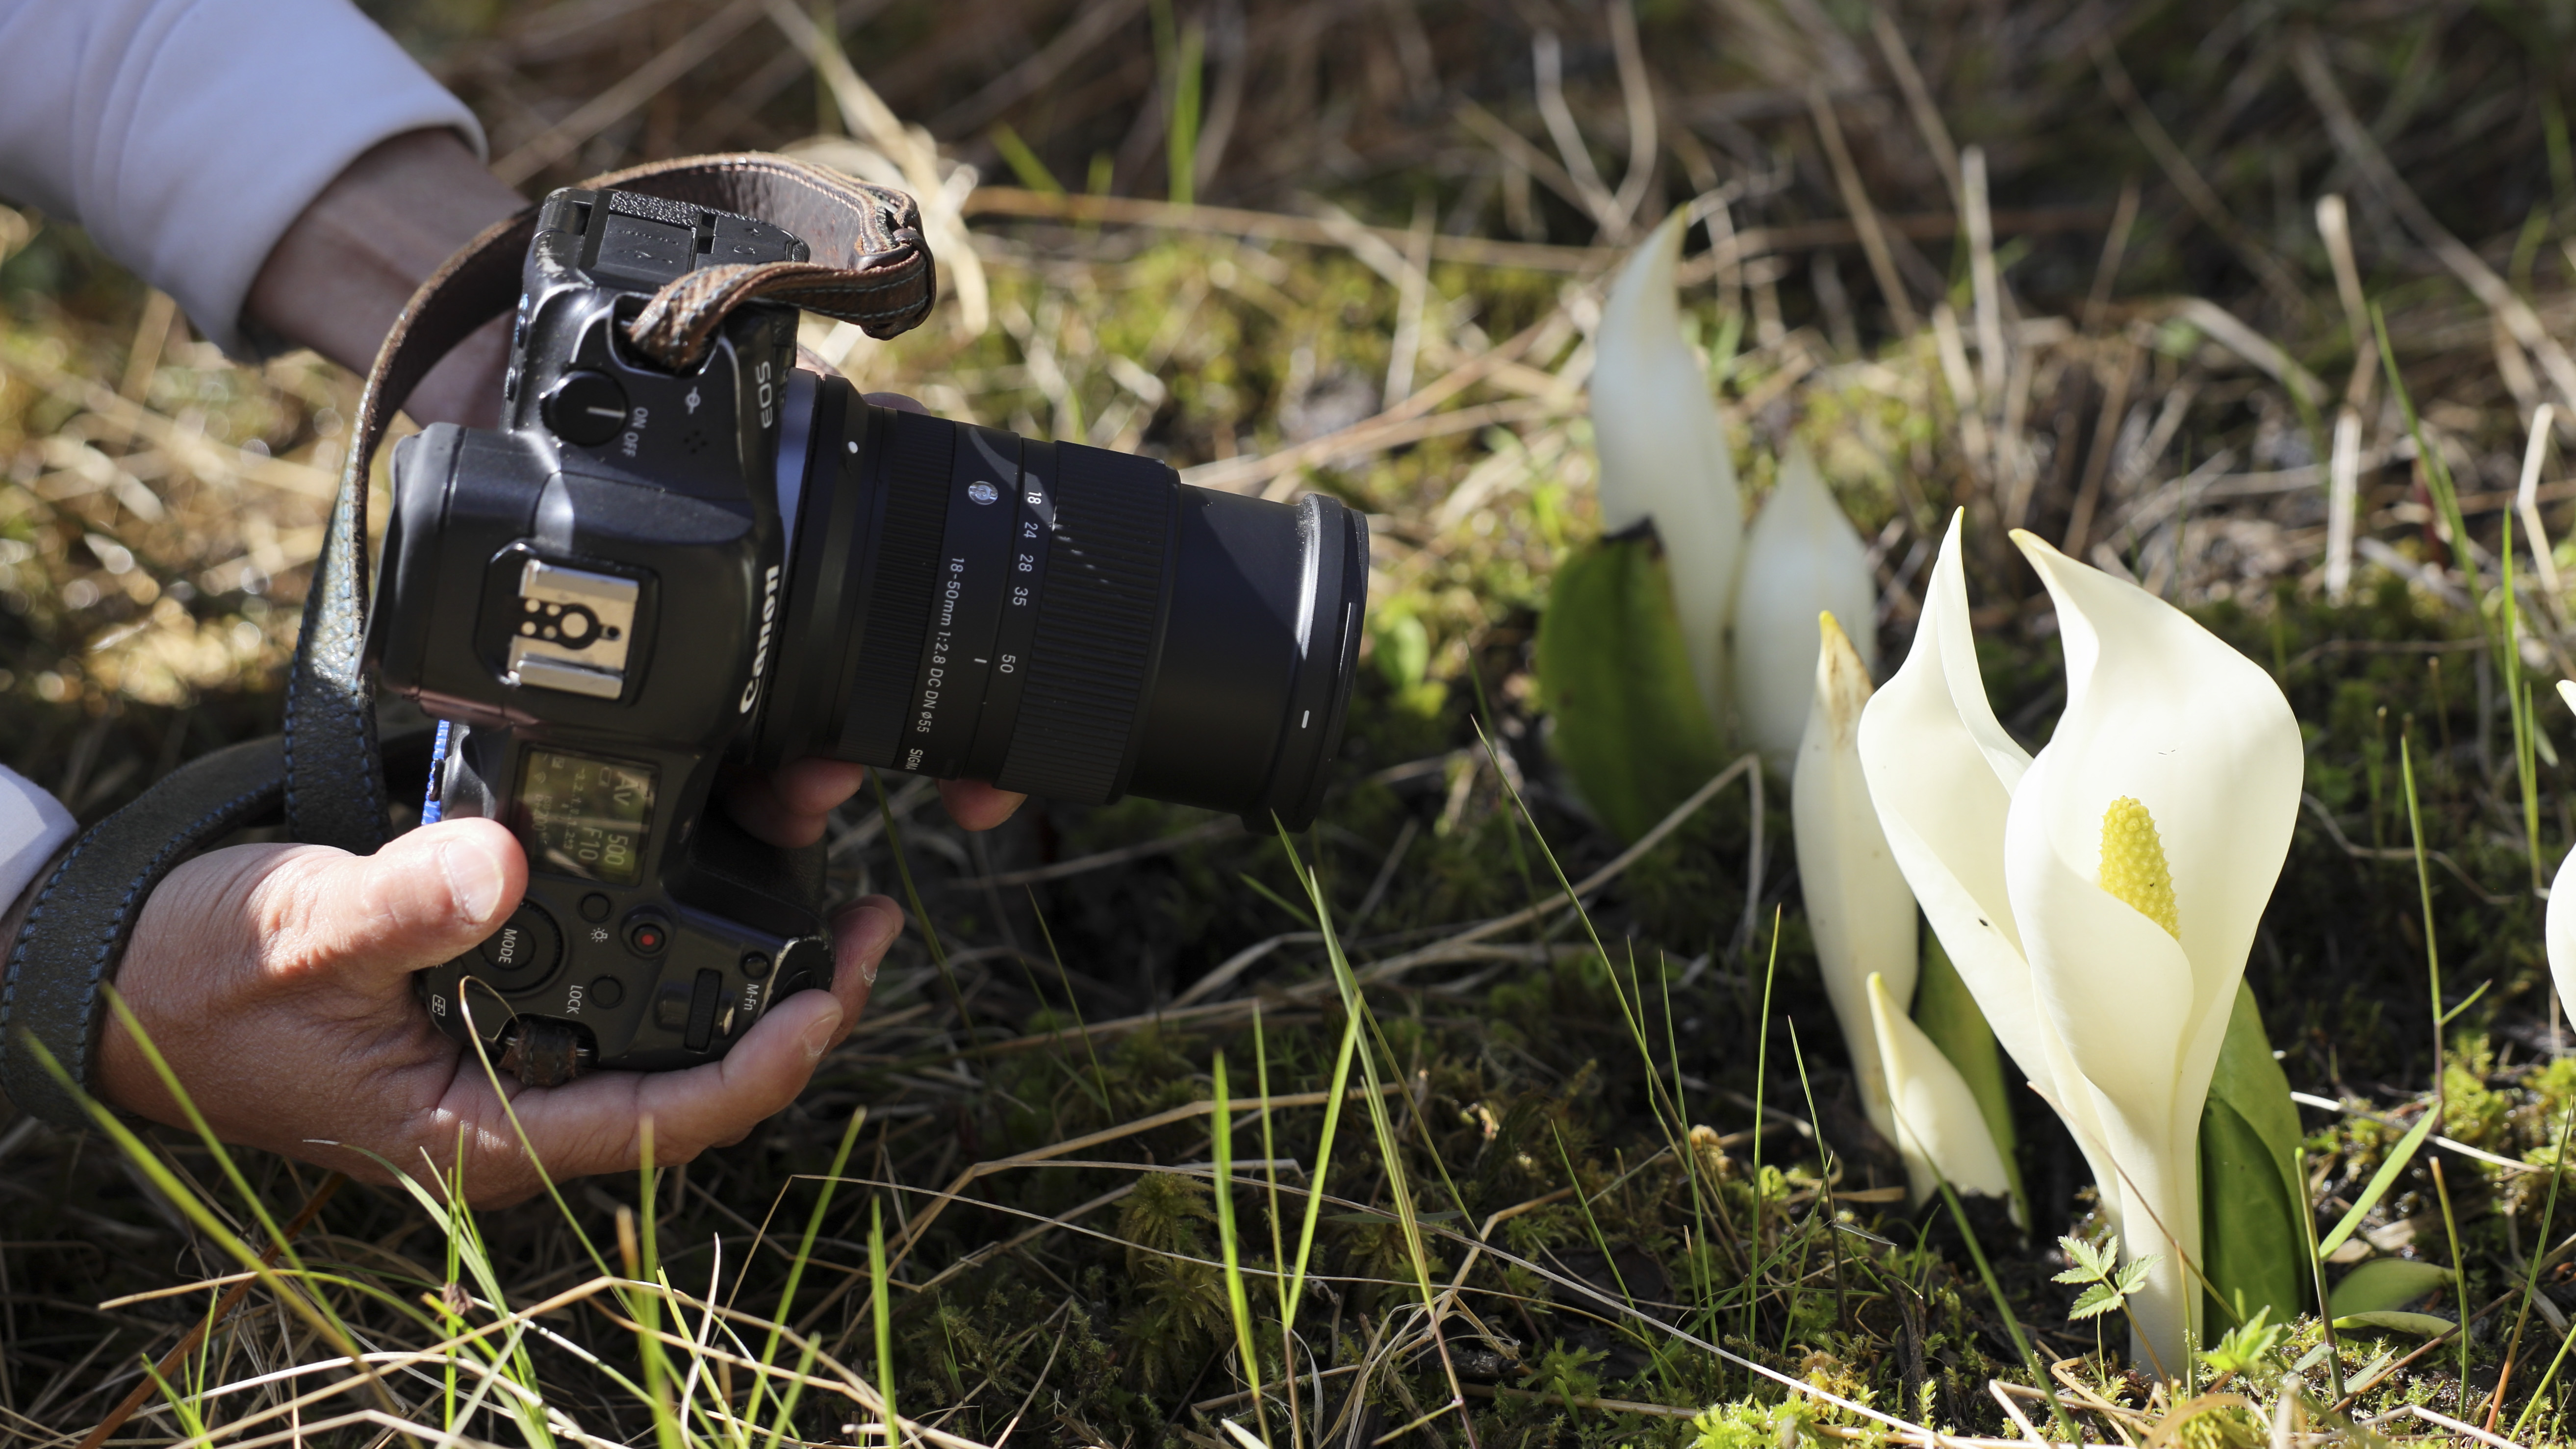 Sigma 18-50mm f/2.8 DC DN Lente contemporánea en mano, acoplada a Canon EOS R5 captura imágenes macro